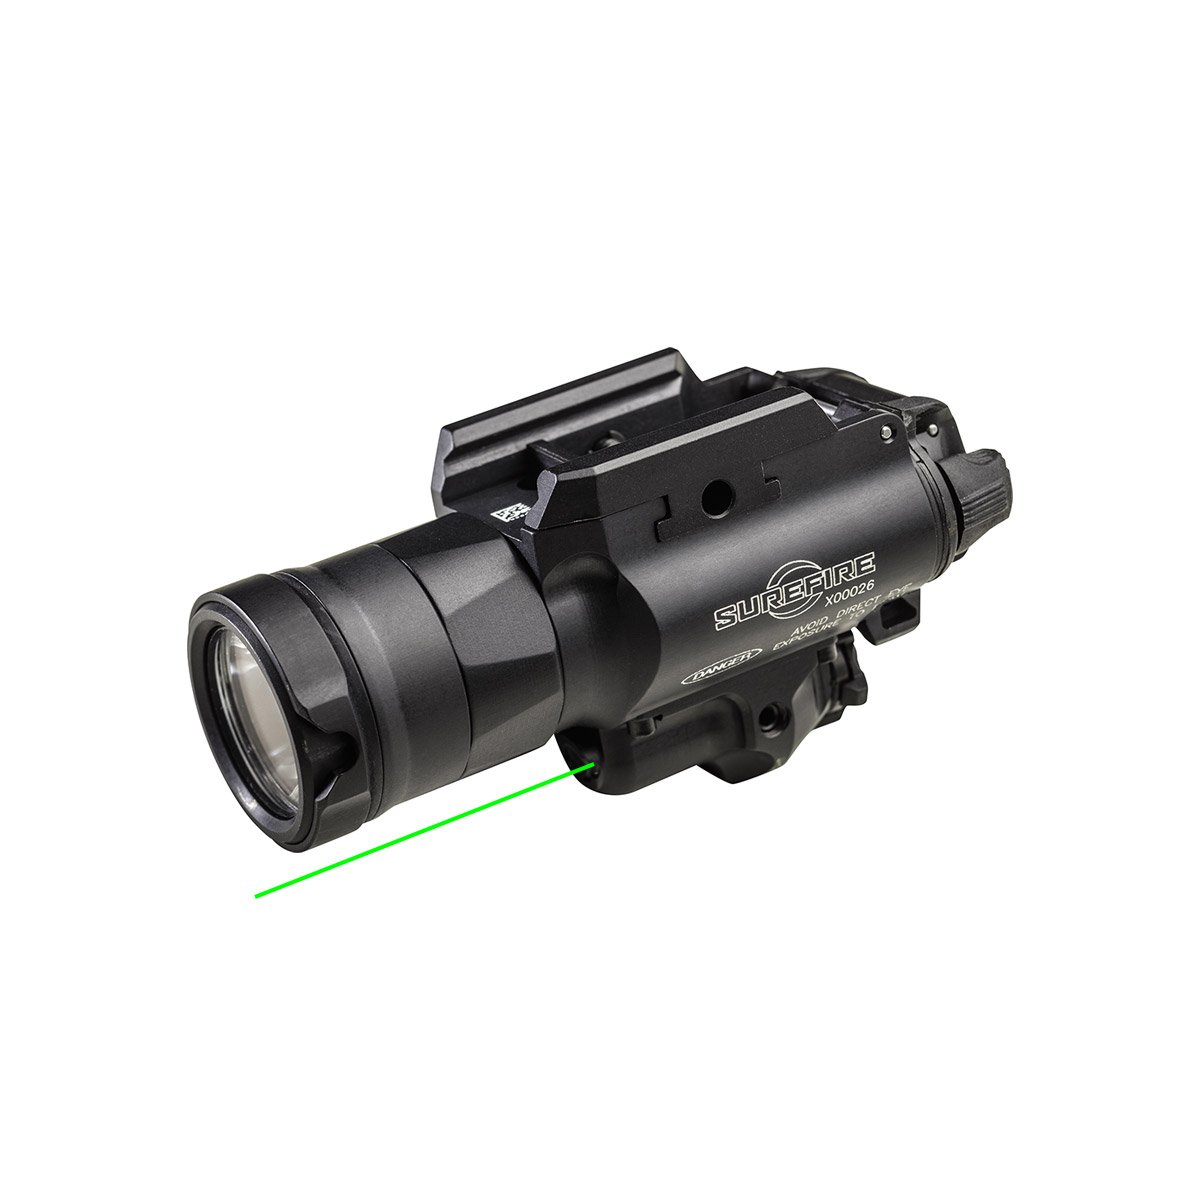 X400UH laser vert Masterfire